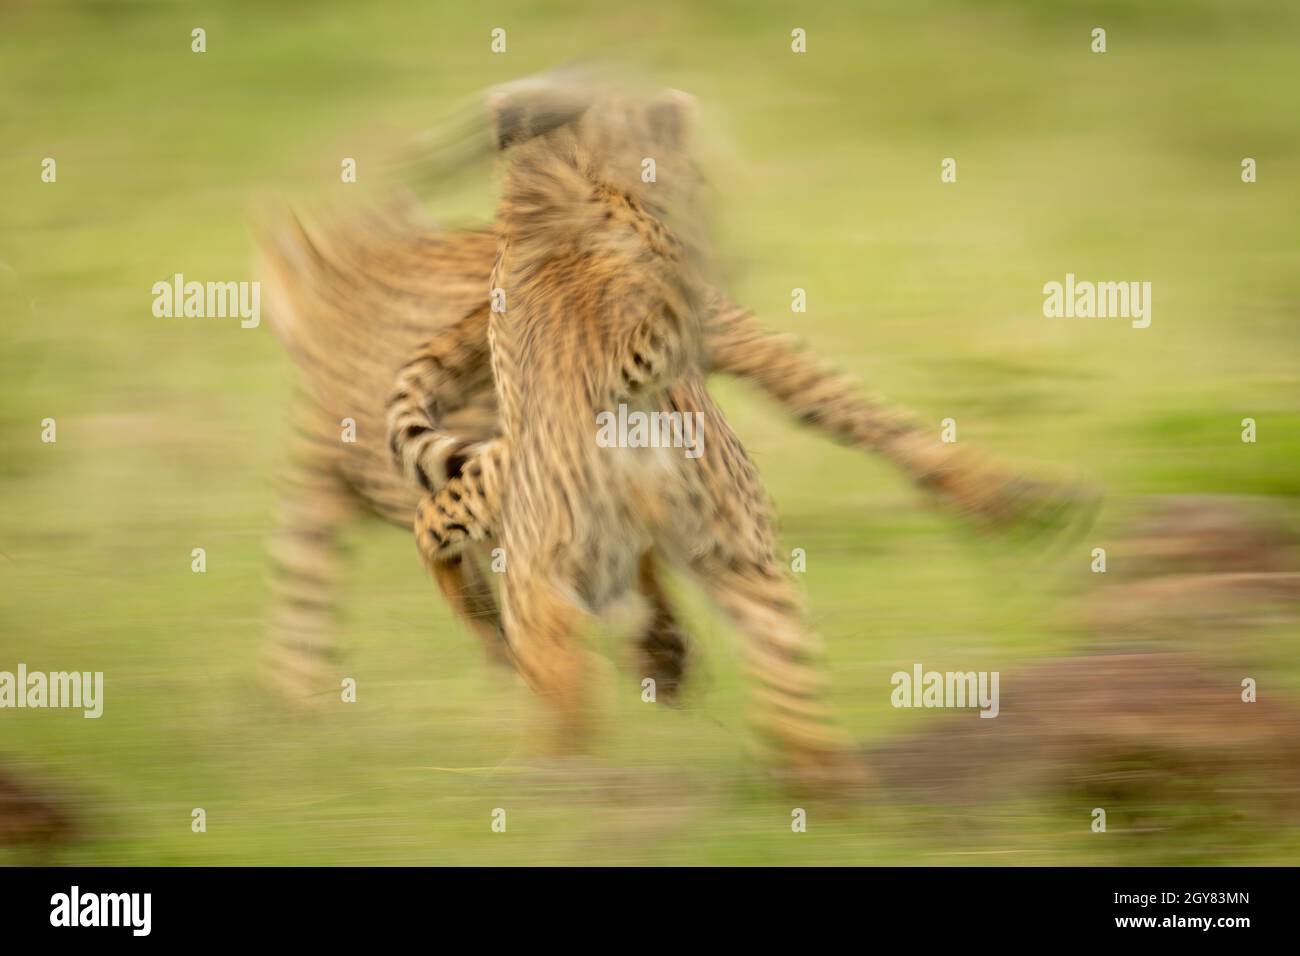 La sartén lenta de los cachorros de guepardo juega peleando Foto de stock